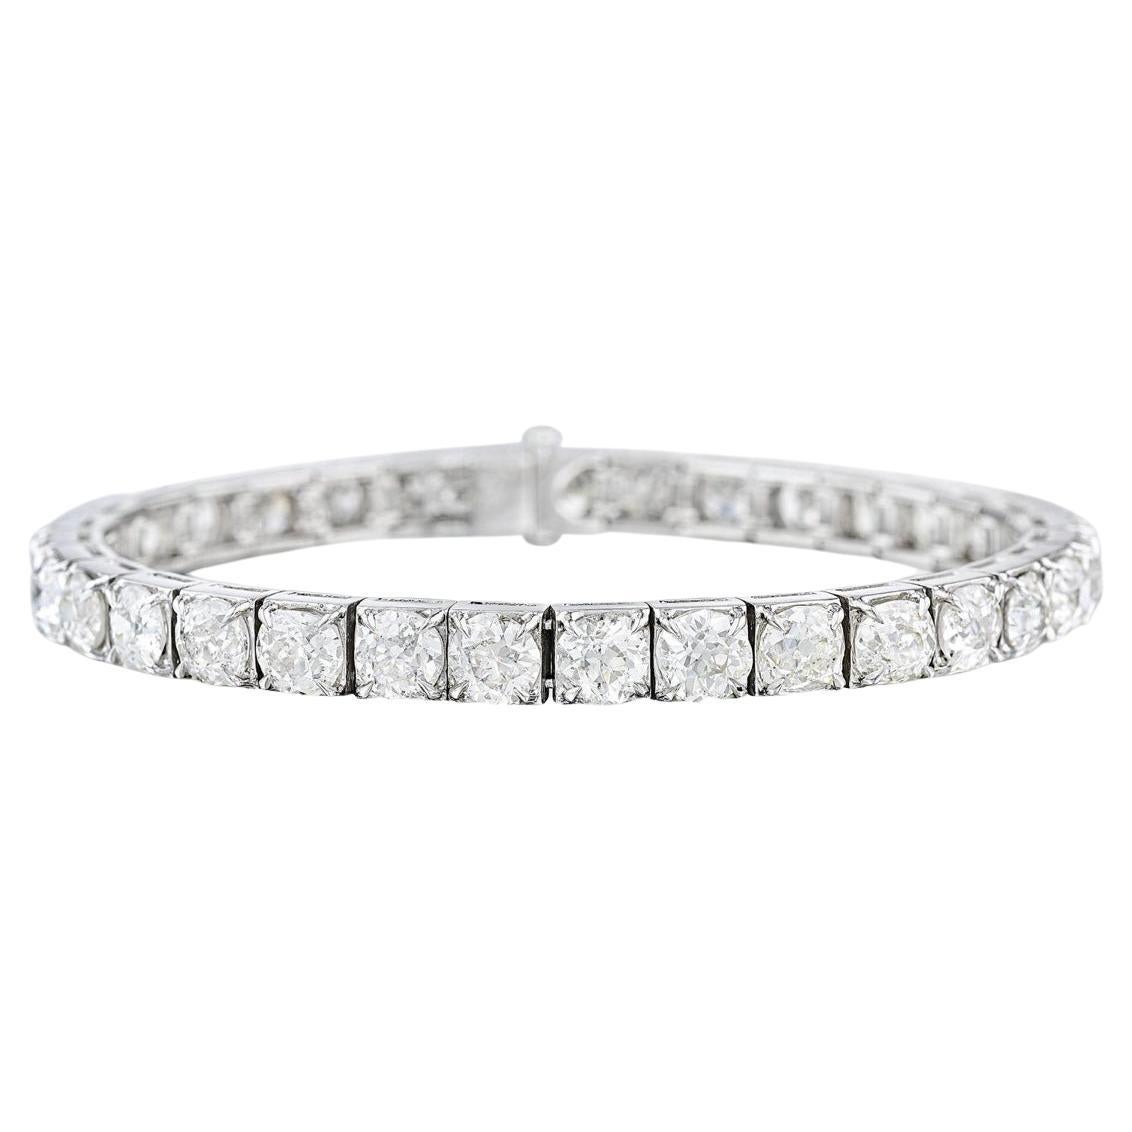 Ce superbe bracelet en platine est orné de diamants de taille européenne et de taille ancienne, d'un poids total de 1,5 million d'euros.  14,67 carats, la plupart avec une couleur H - J et une clarté VS1 à SI2. 

Poids du diamant : 14.67 carat